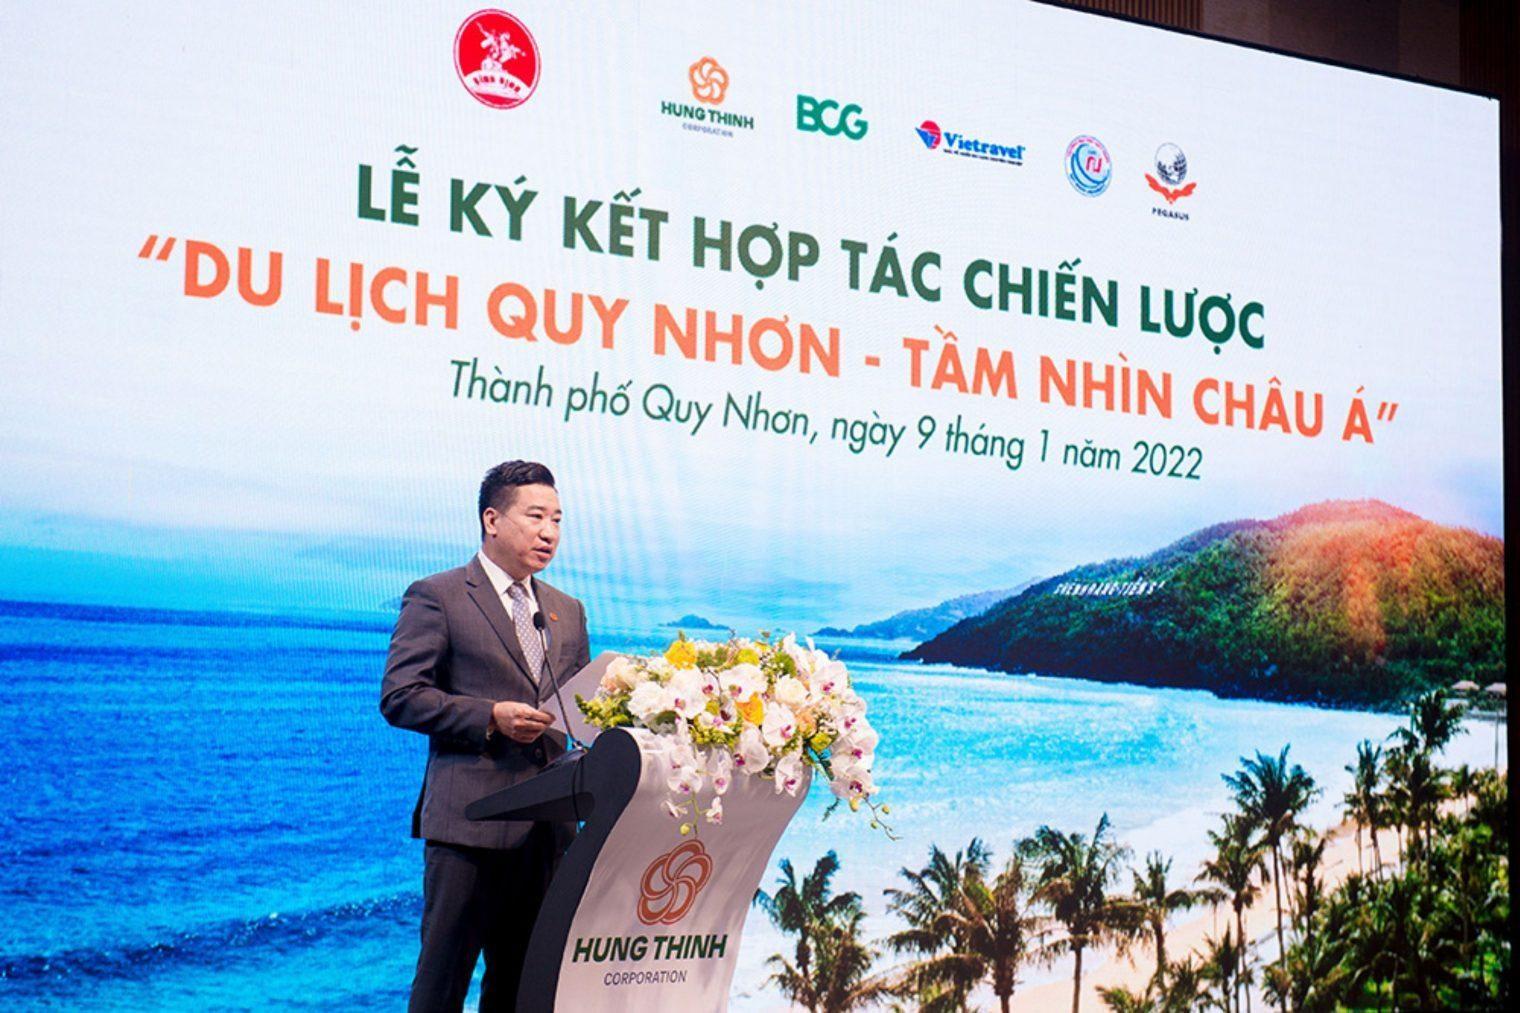 Read more about the article “Ông lớn” Hưng Thịnh Land tham vọng gì vào BĐS Bình Định?